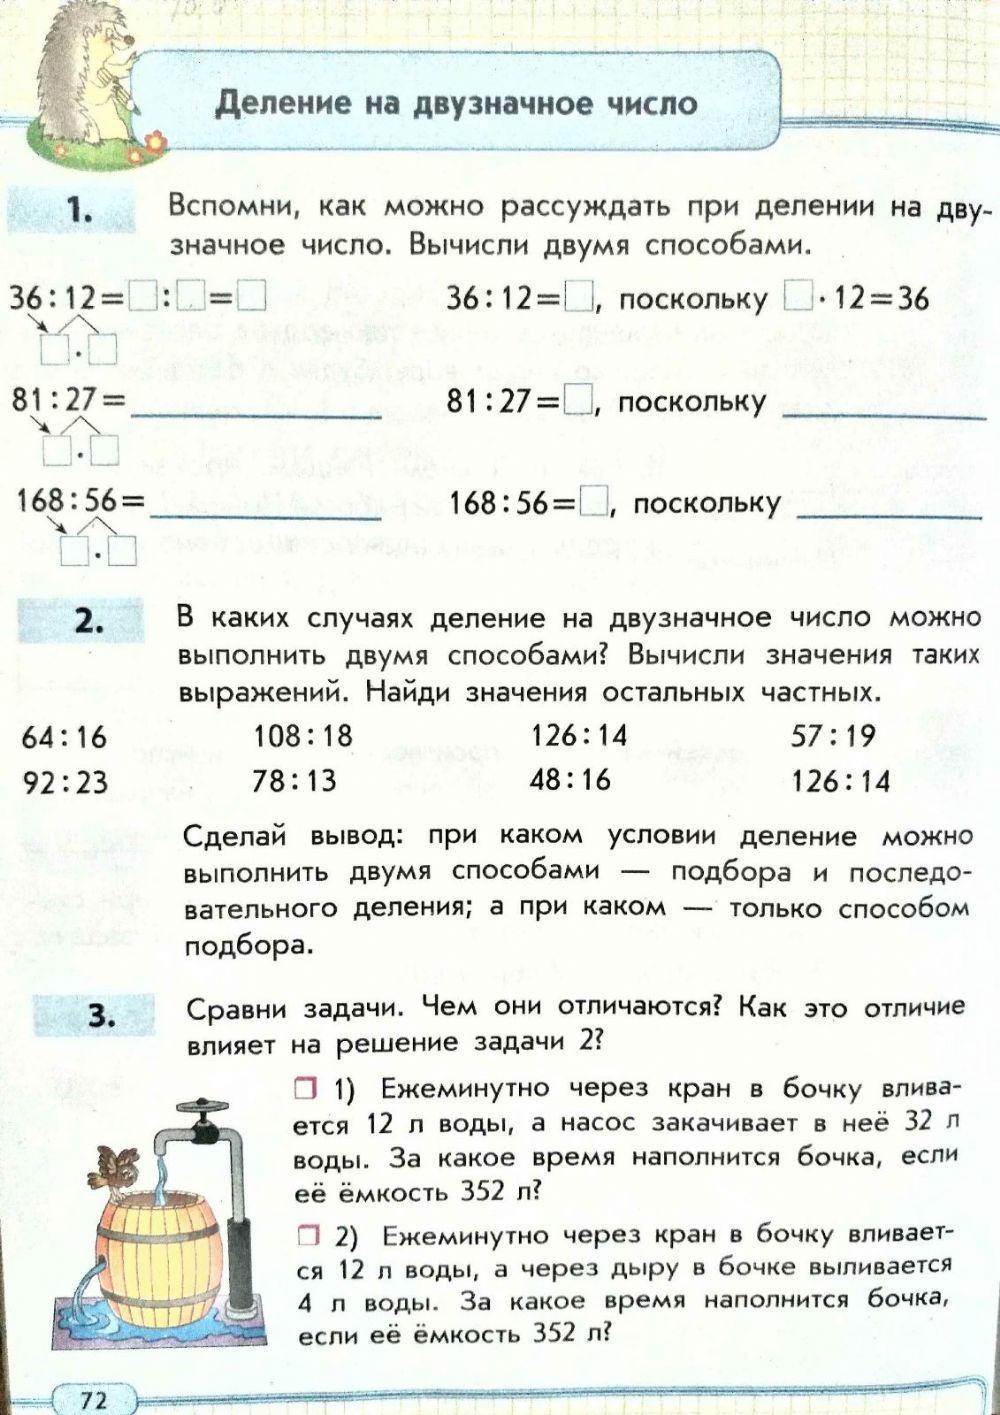 Скворцова С.А. 3 класс с. 72